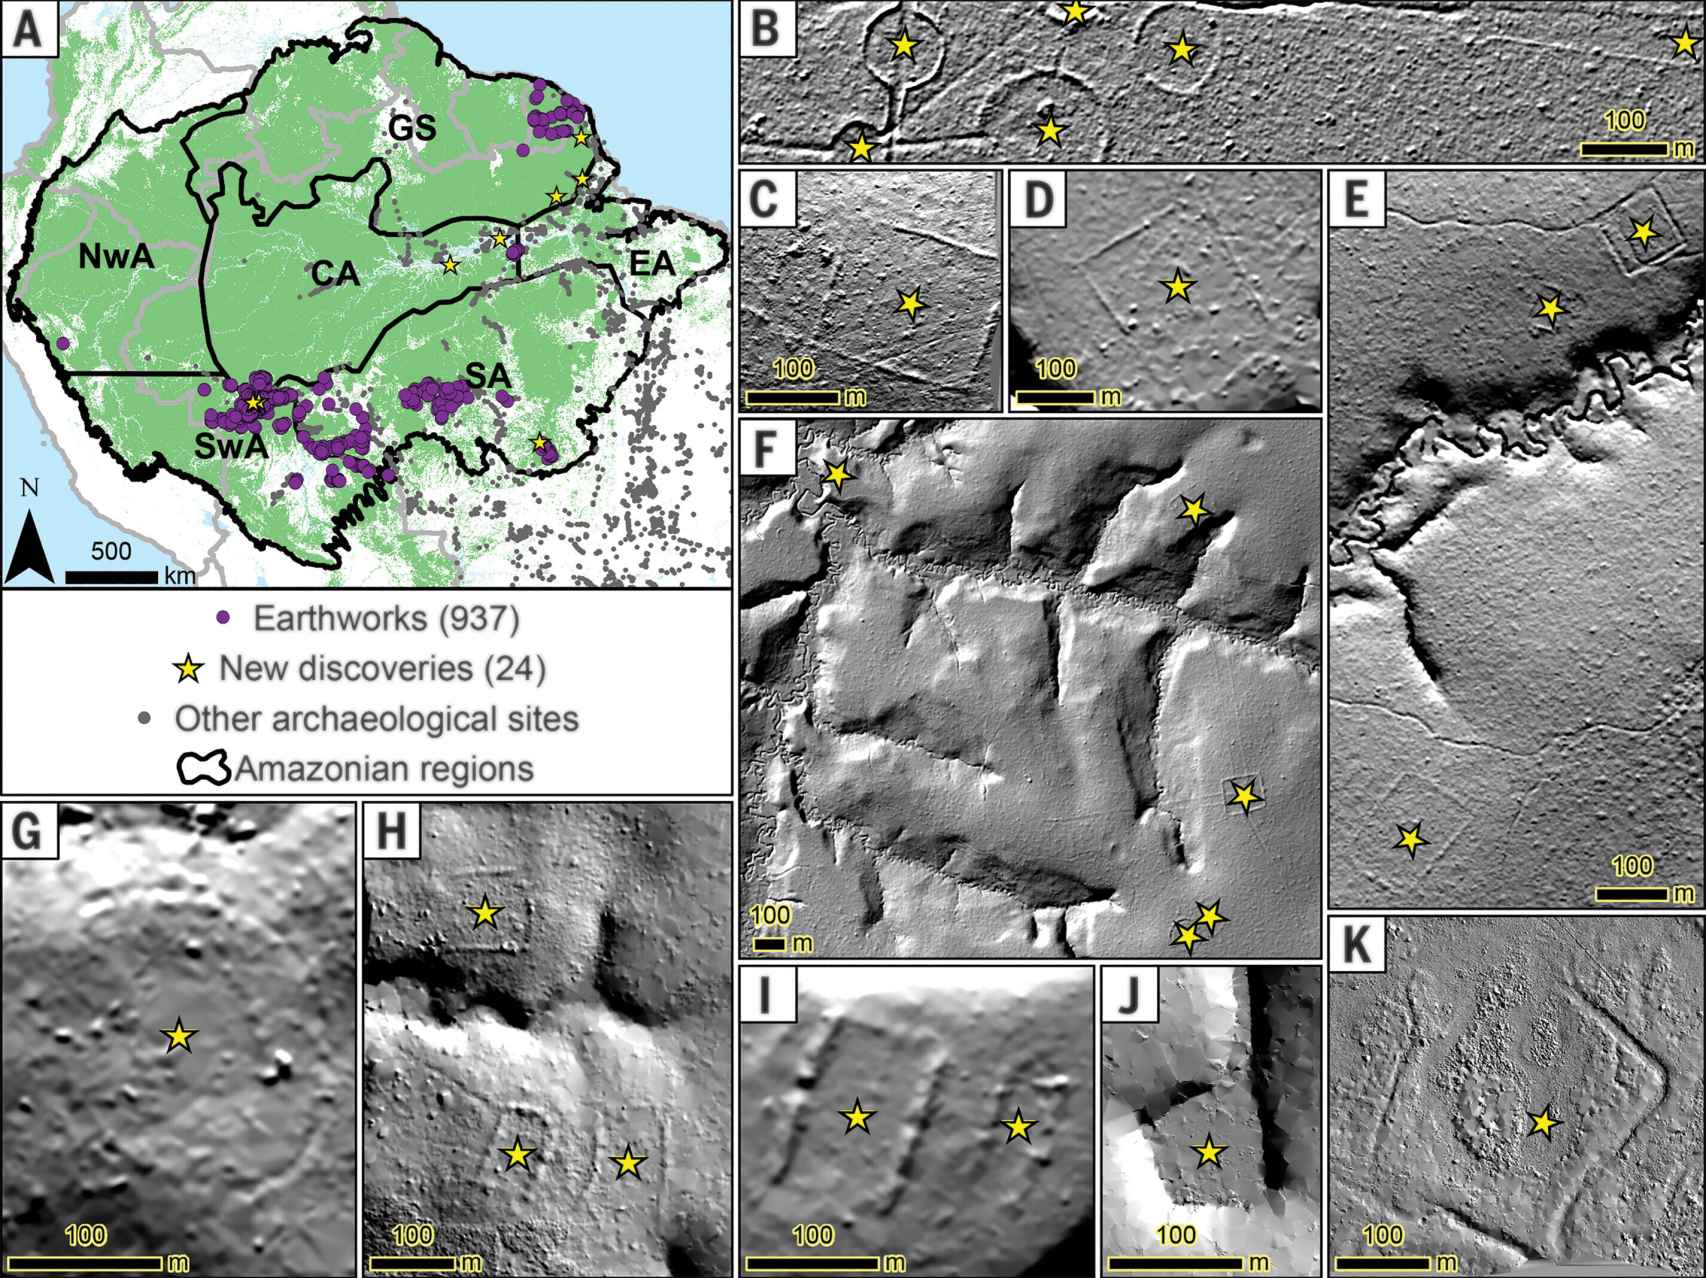 Distribución geográfica de yacimientos descubiertos en el Amazonas.